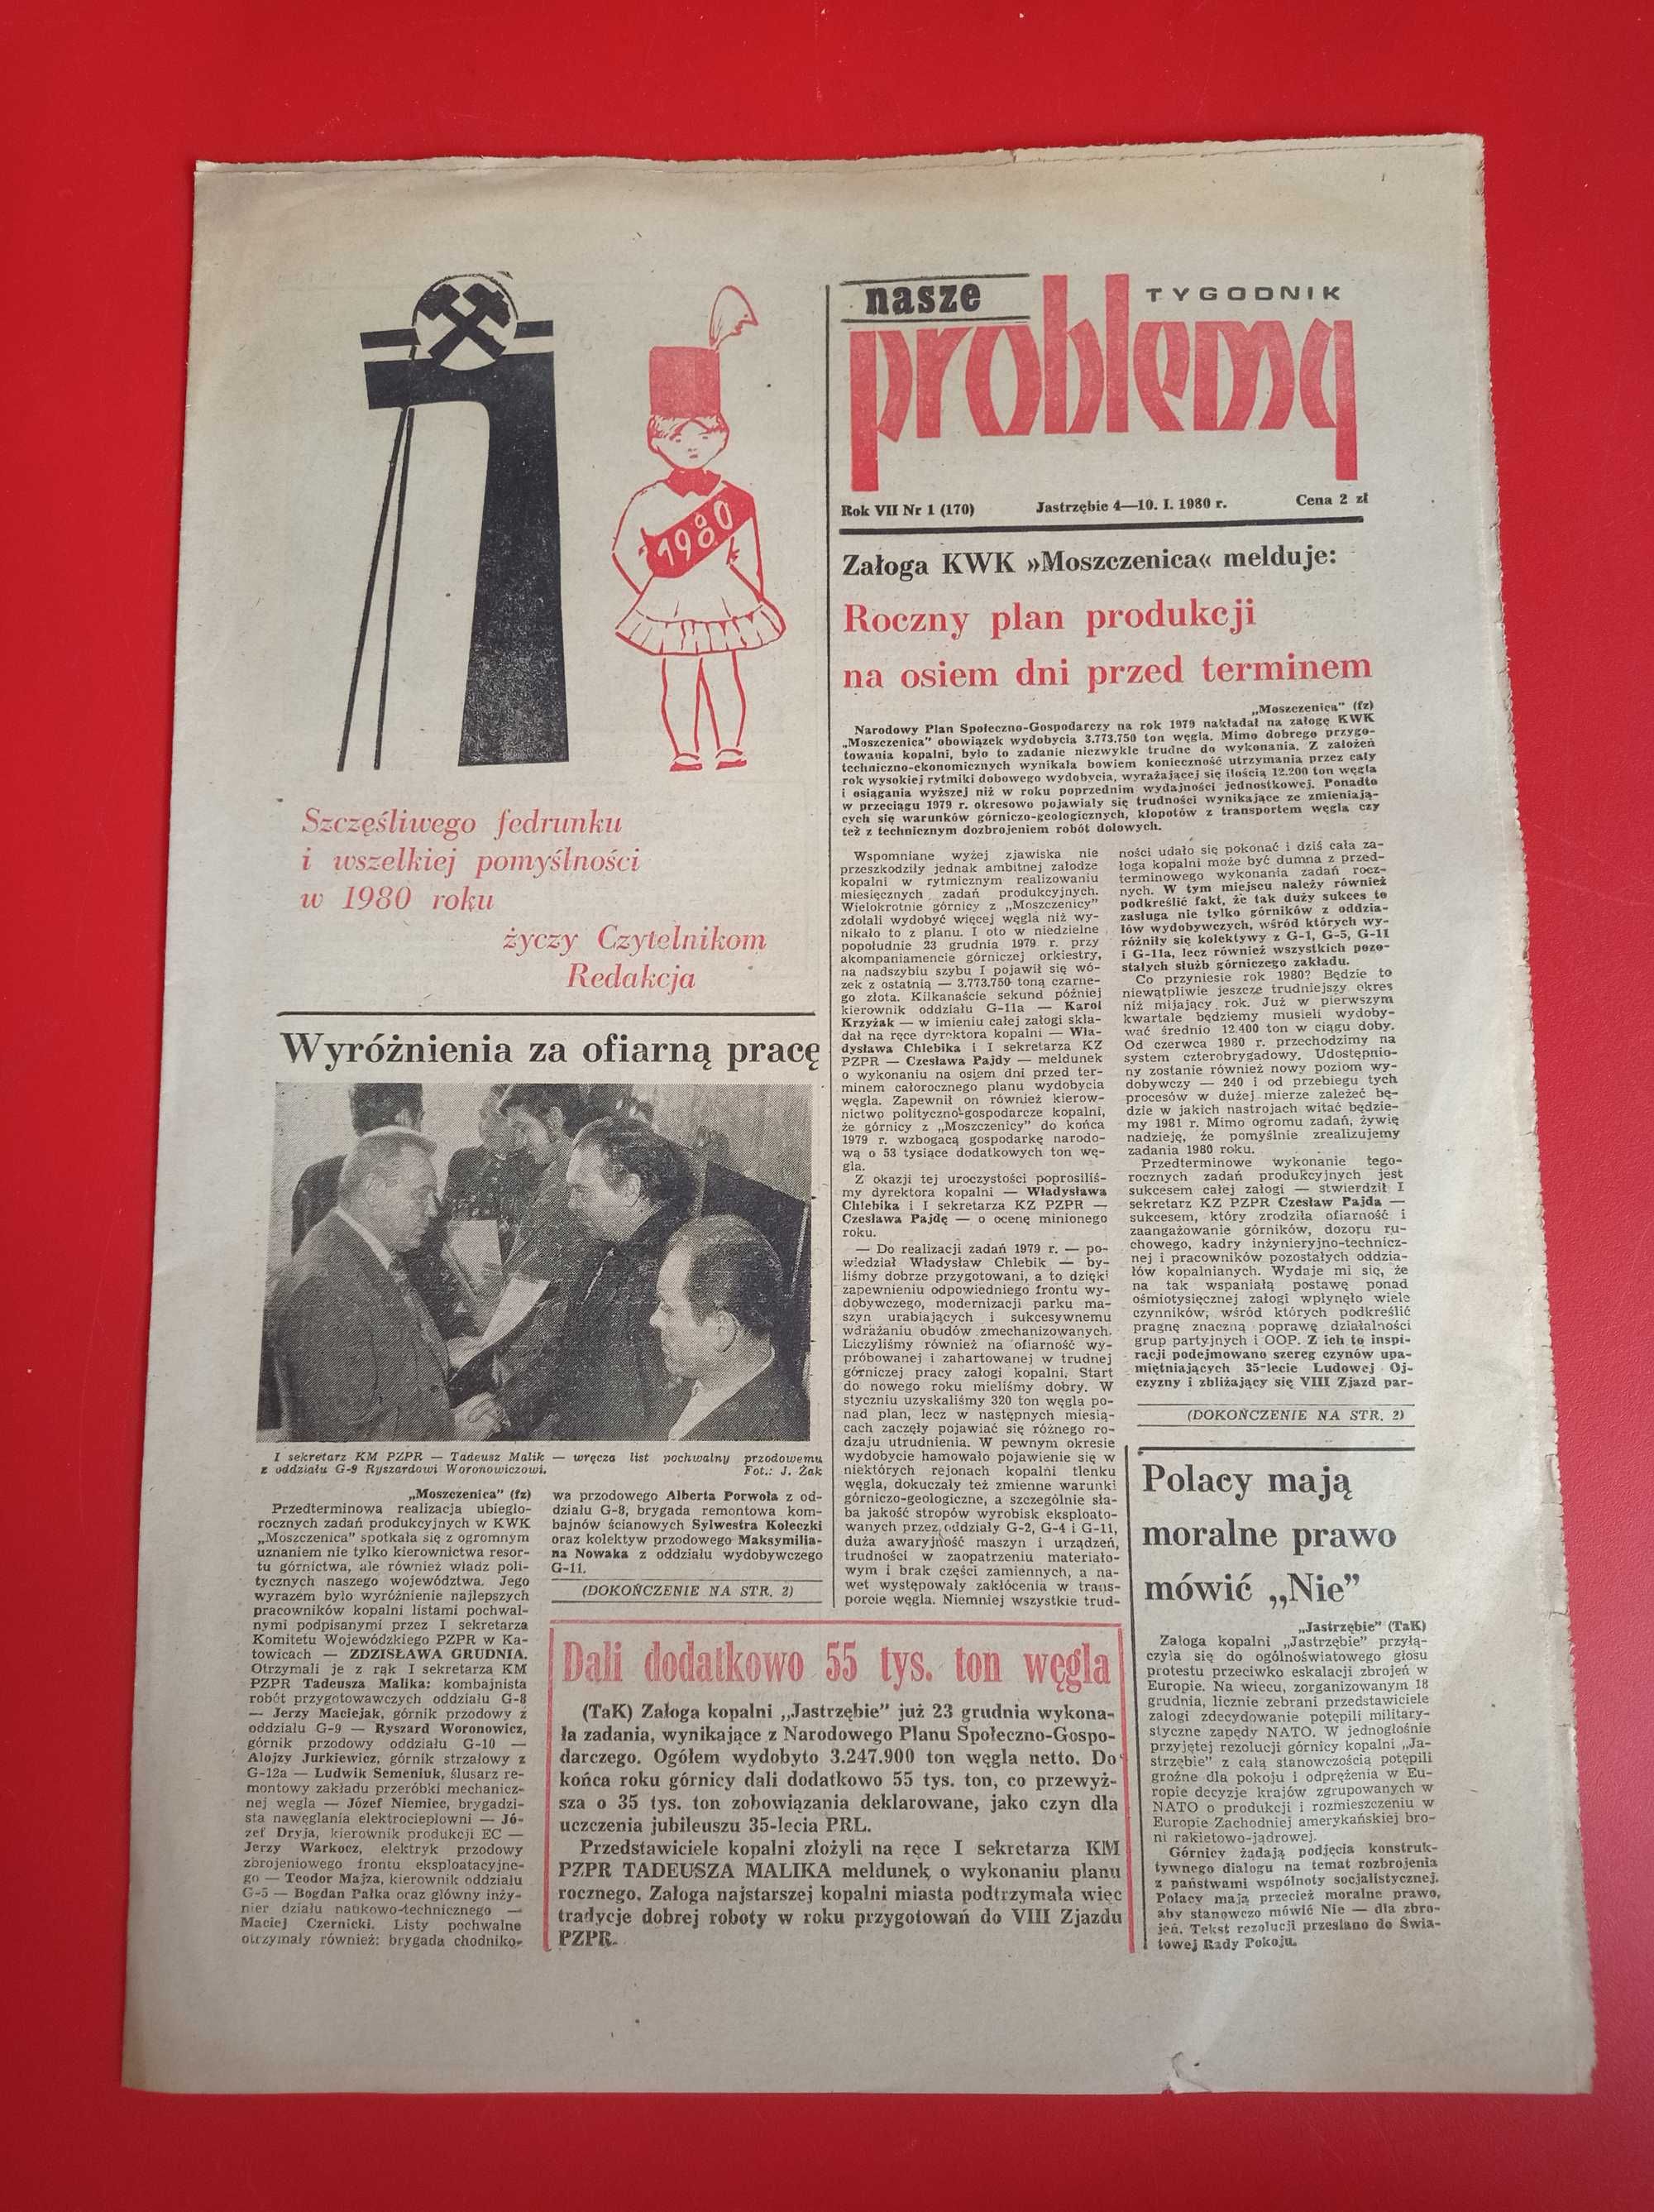 Nasze problemy, Jastrzębie, nr 1, 4-10 stycznia 1980